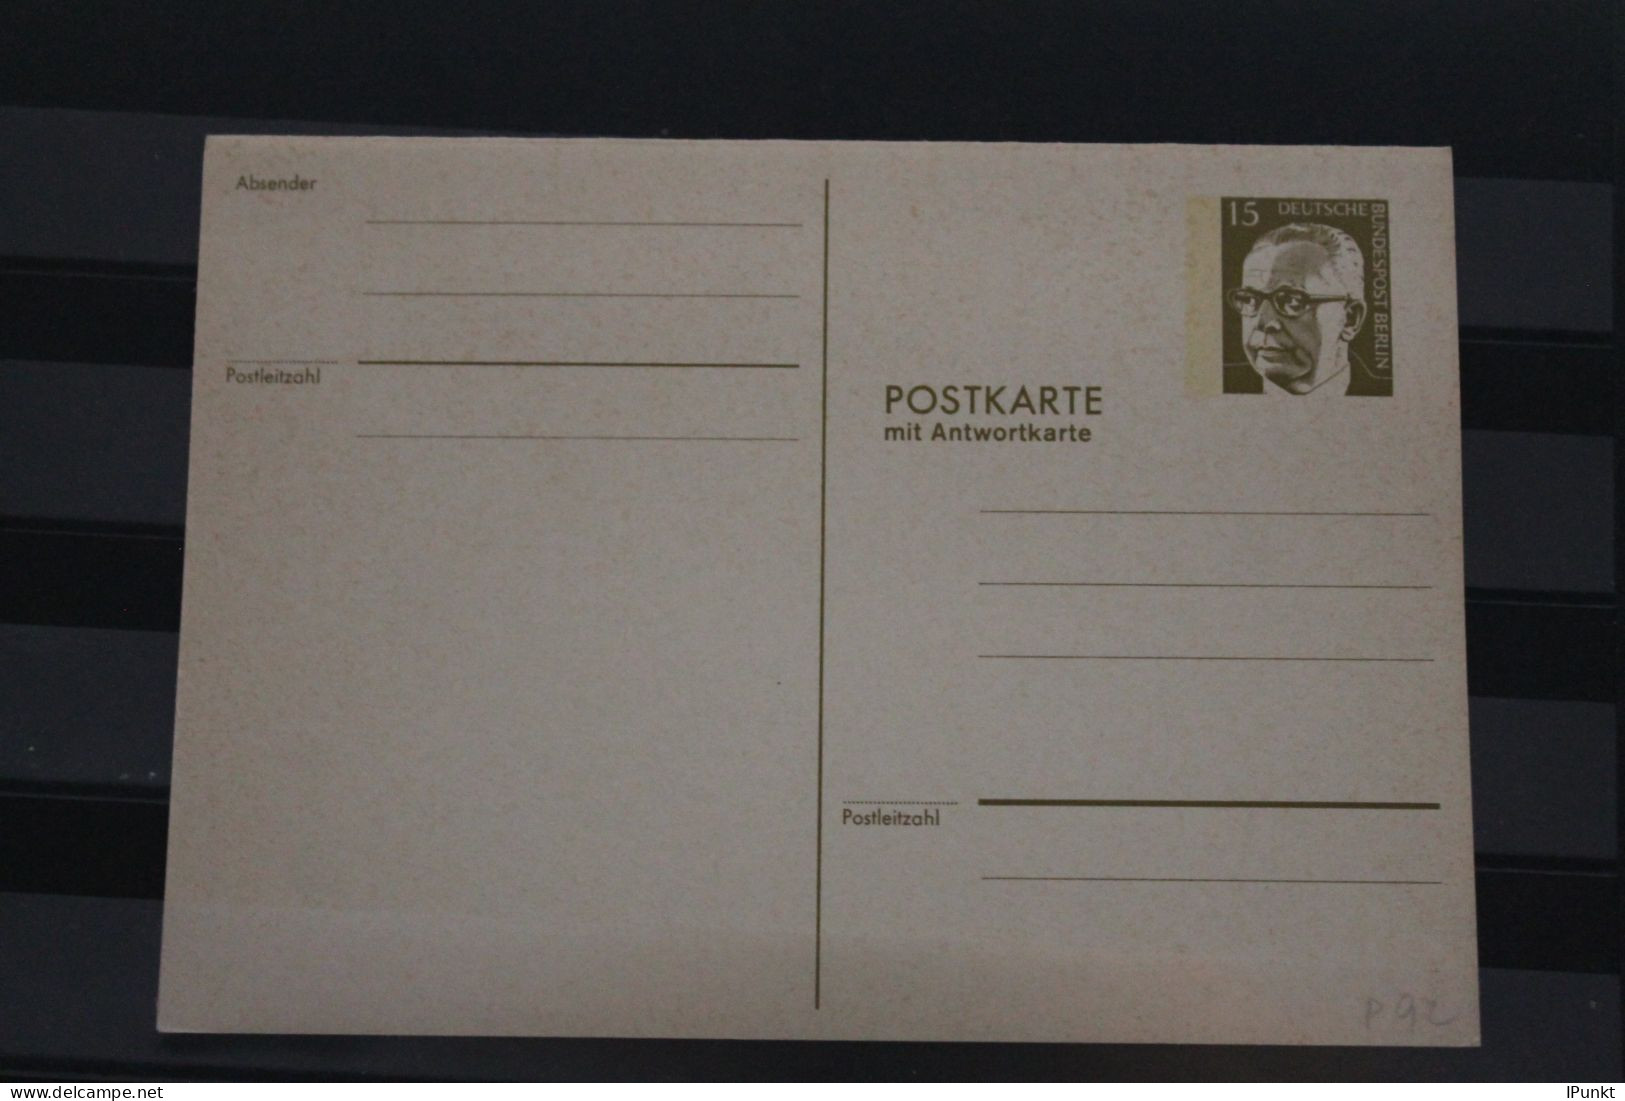 Berlin 1973; Ganzsache G. Heinemann Postkarte Mit Antwortkarte  P 92; Ungebraucht - Cartes Postales - Neuves